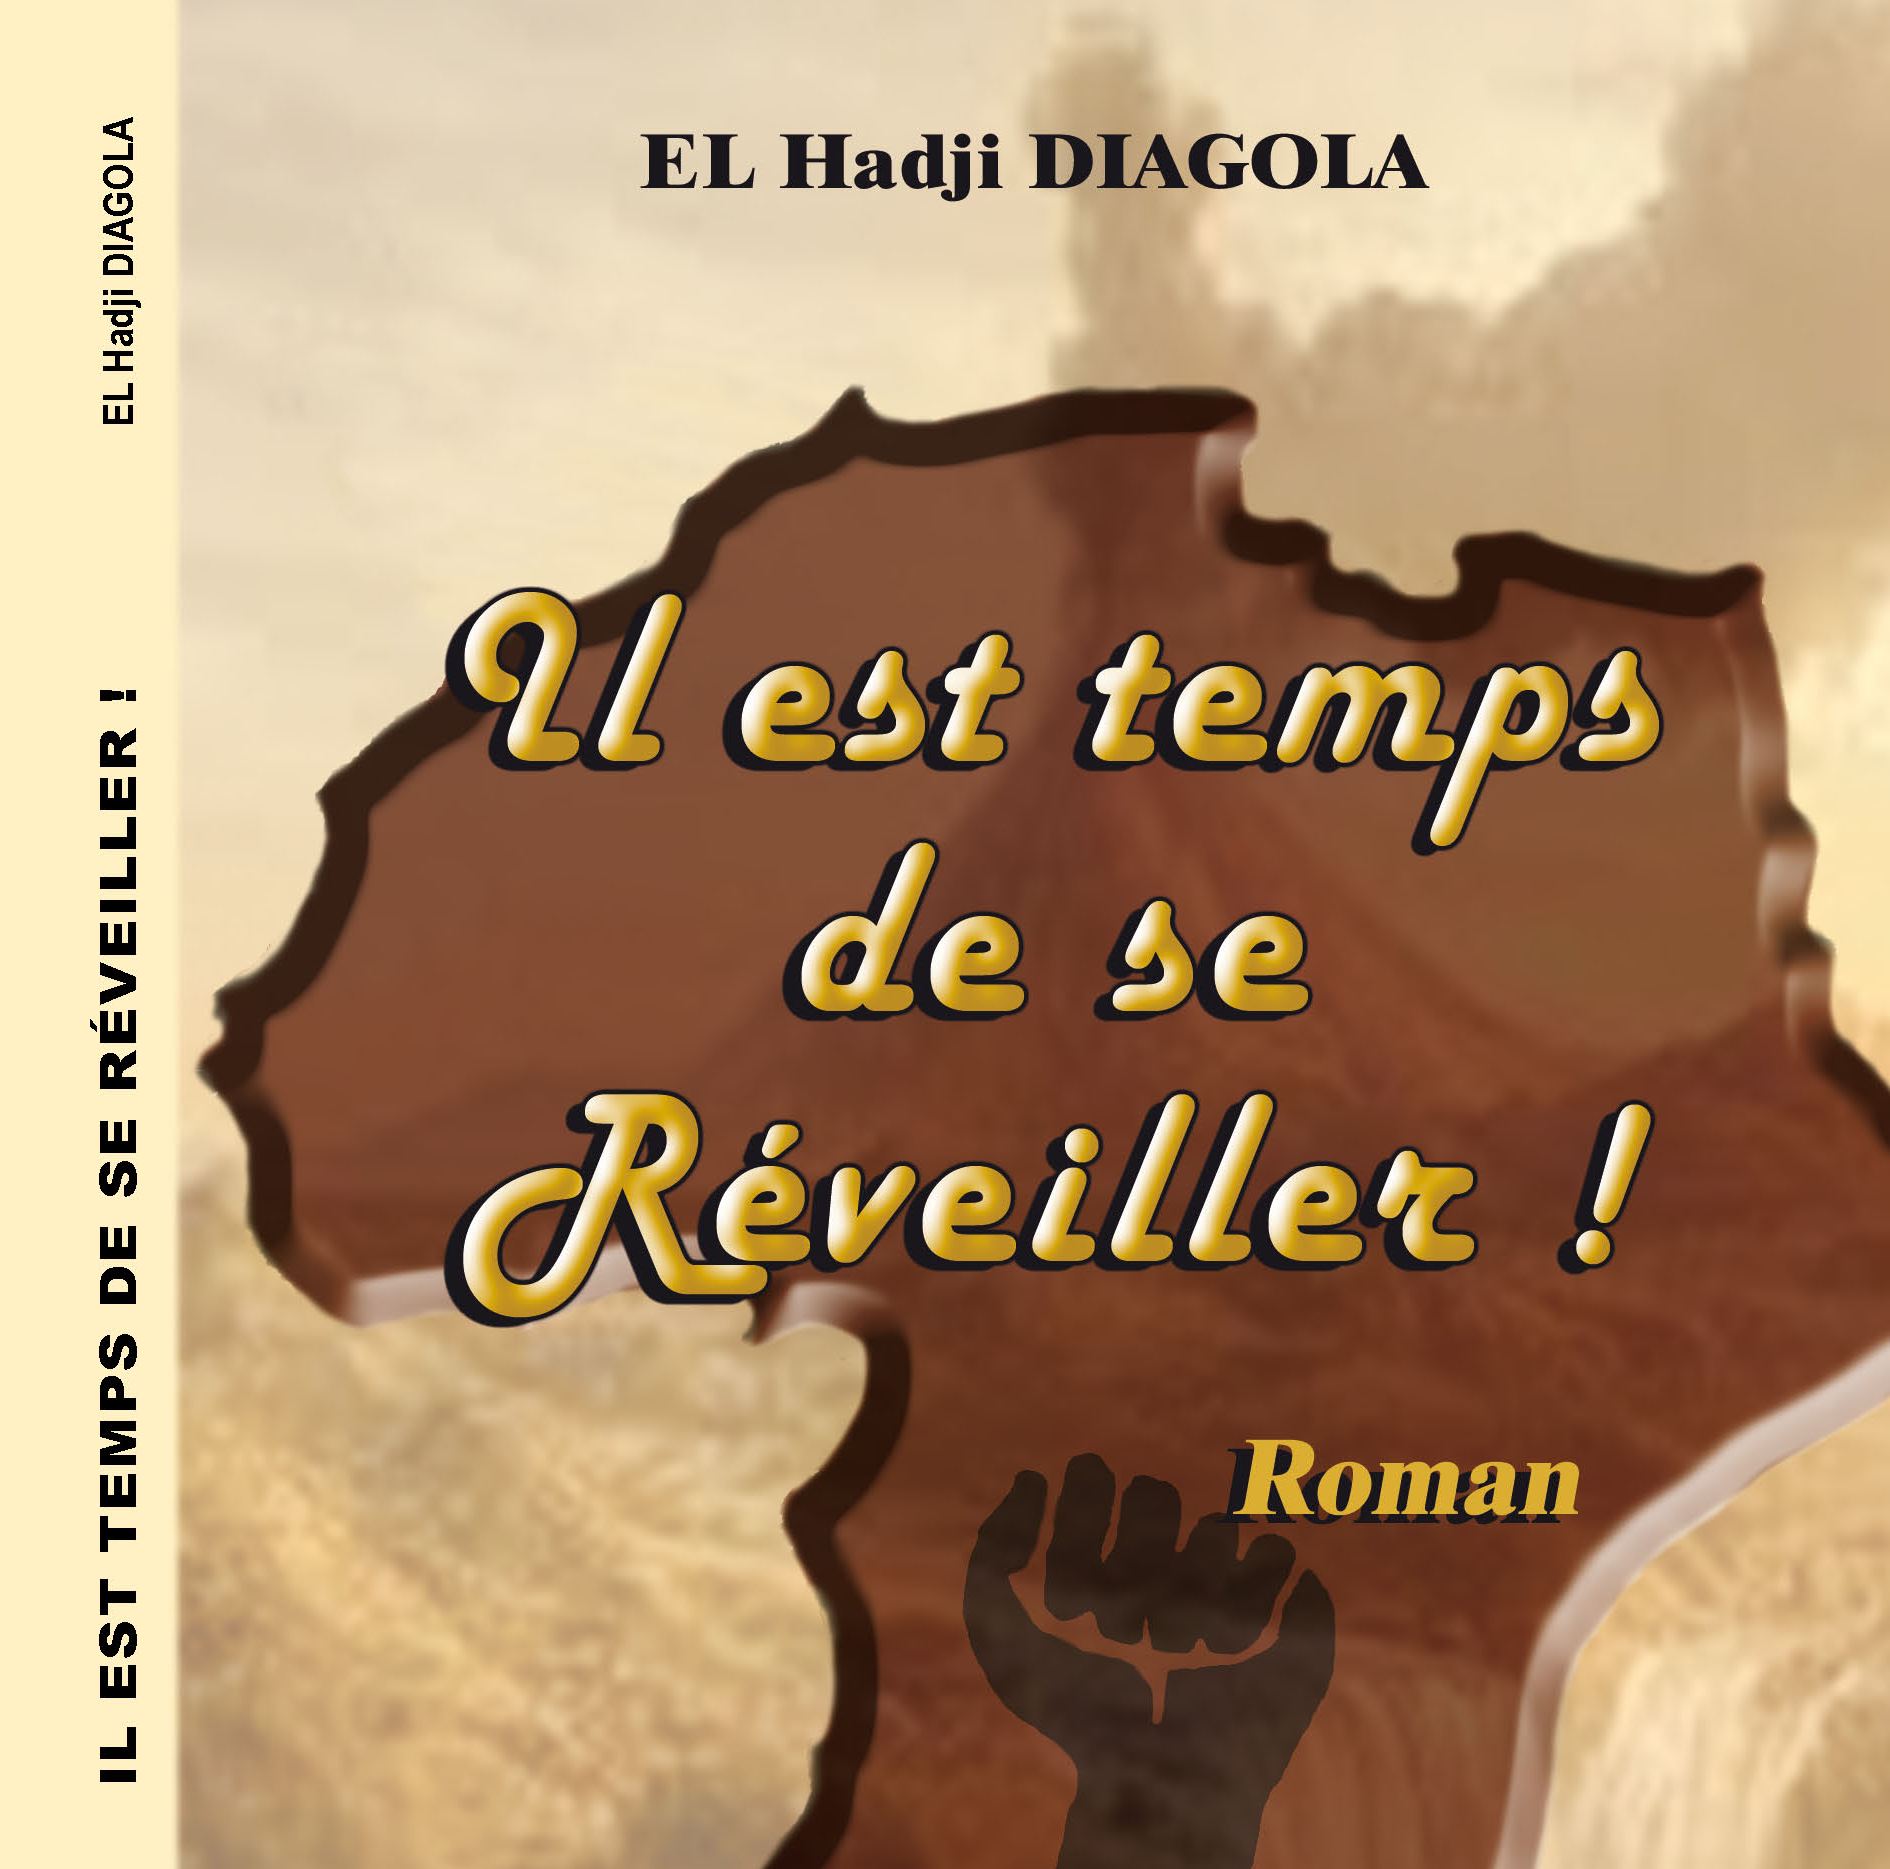 Couverture du livre de El Hadji Diagola